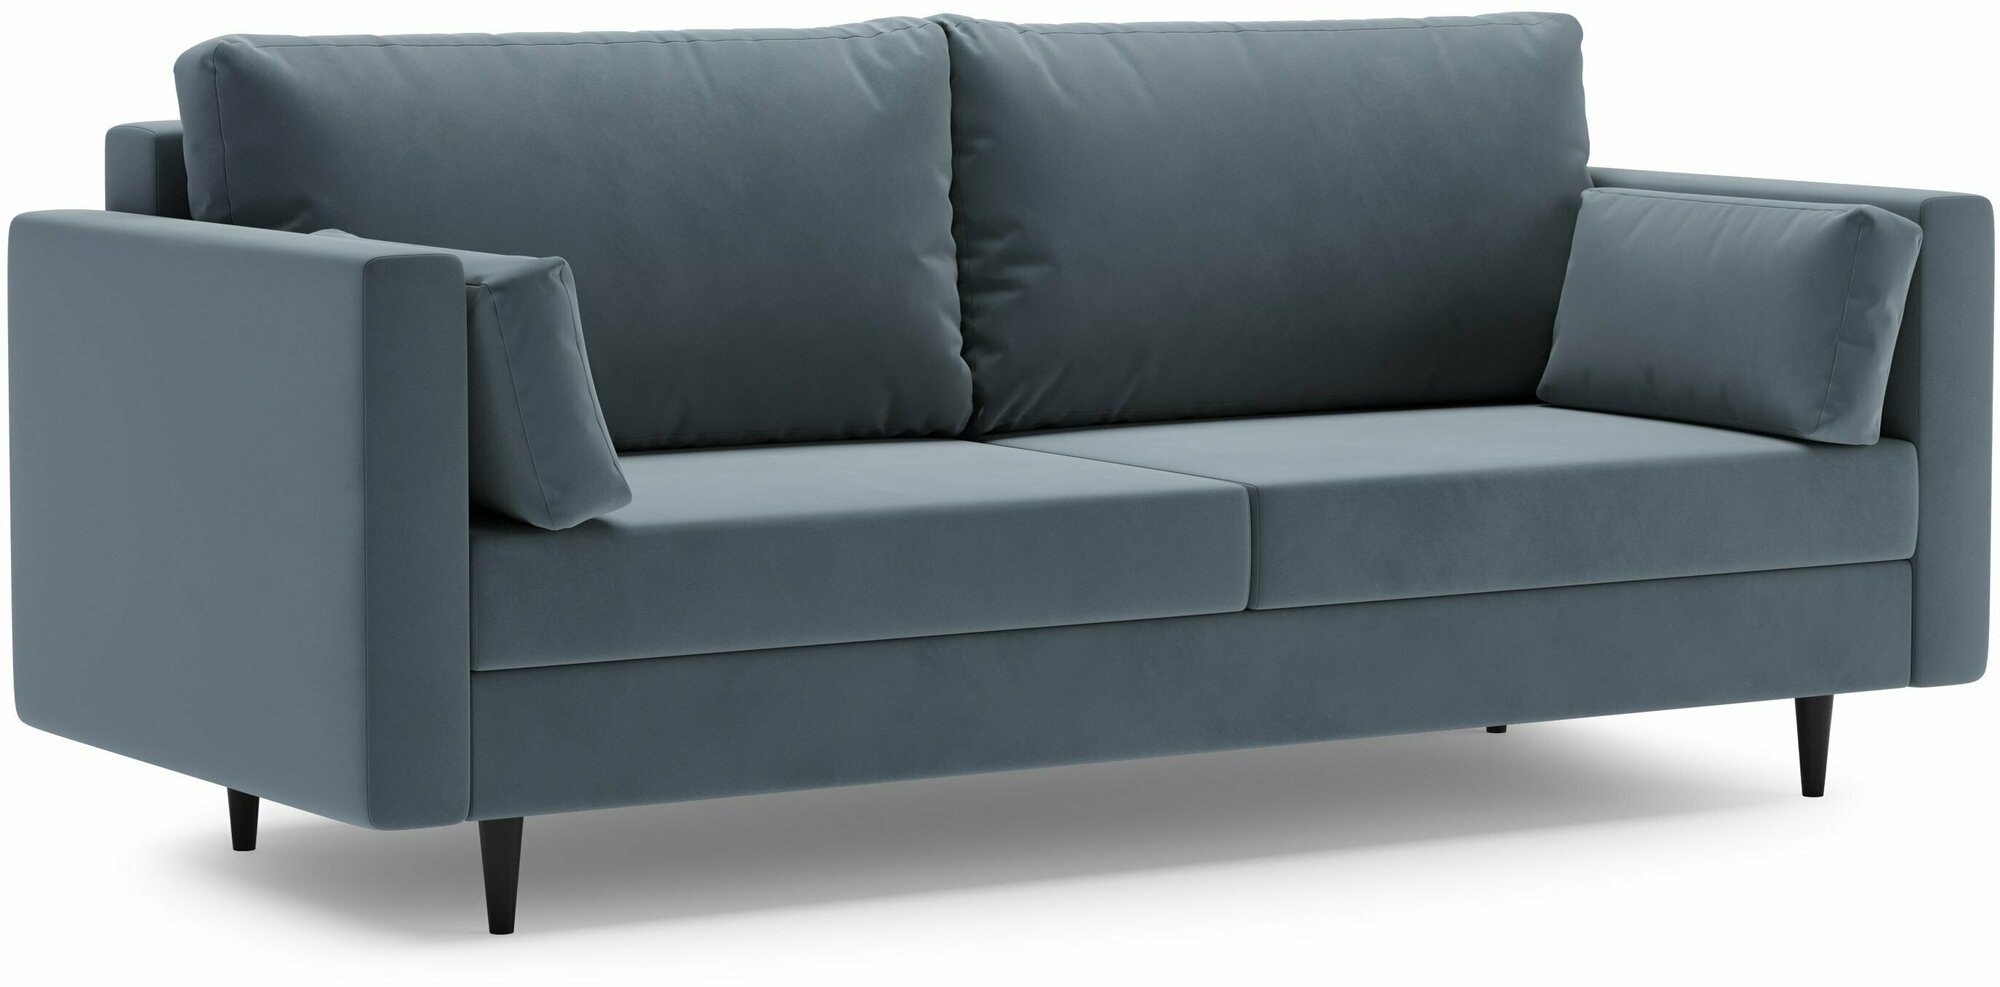 Лоренс, диван на ножках, диван в скандинавском стиле, диван новинка, диван стильный